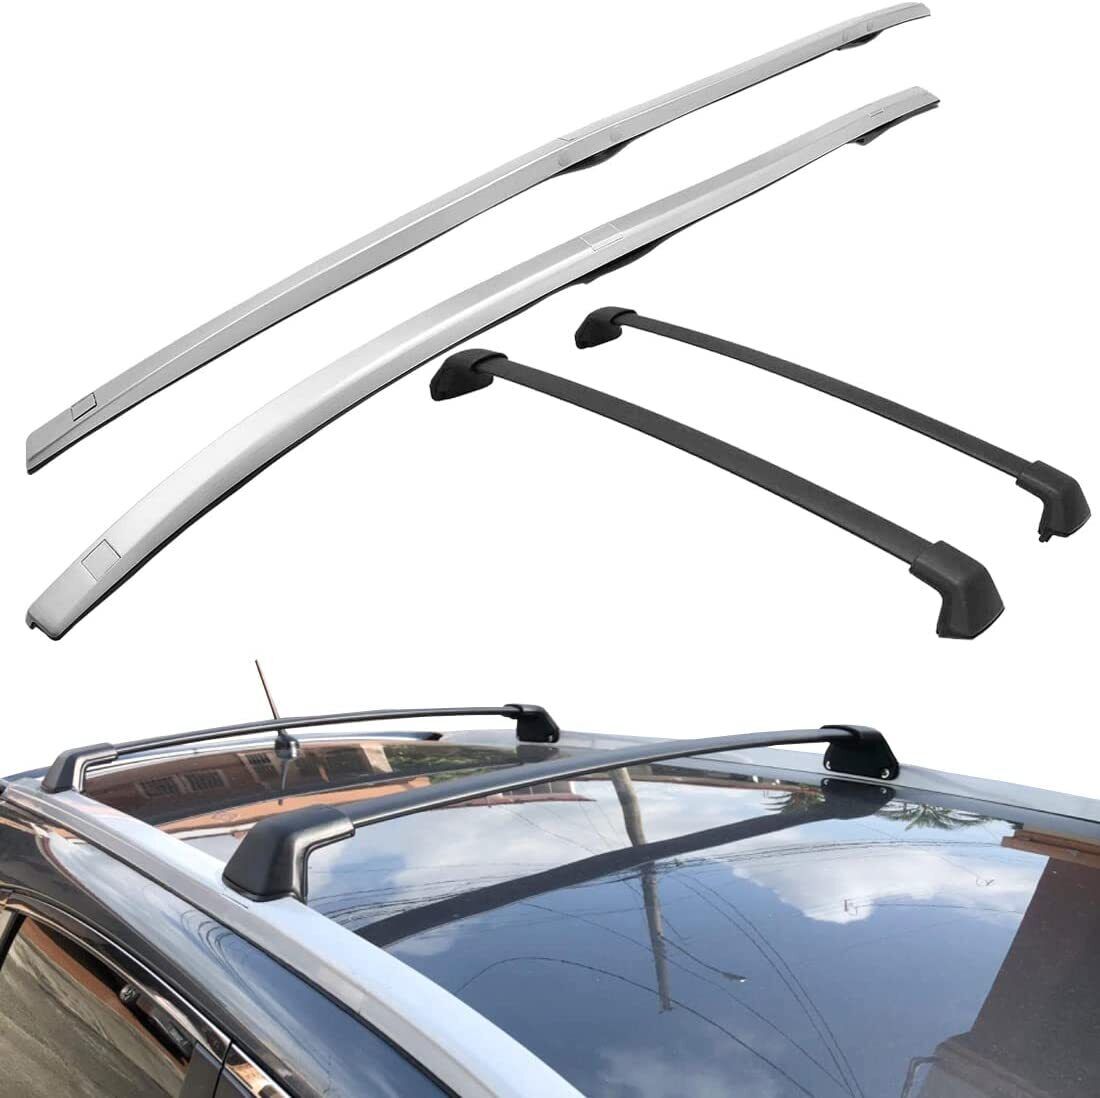 4Pcs Roof Rack for 2012-2016 Honda CRV Cross Bars + Side Rails Luggage Carrier